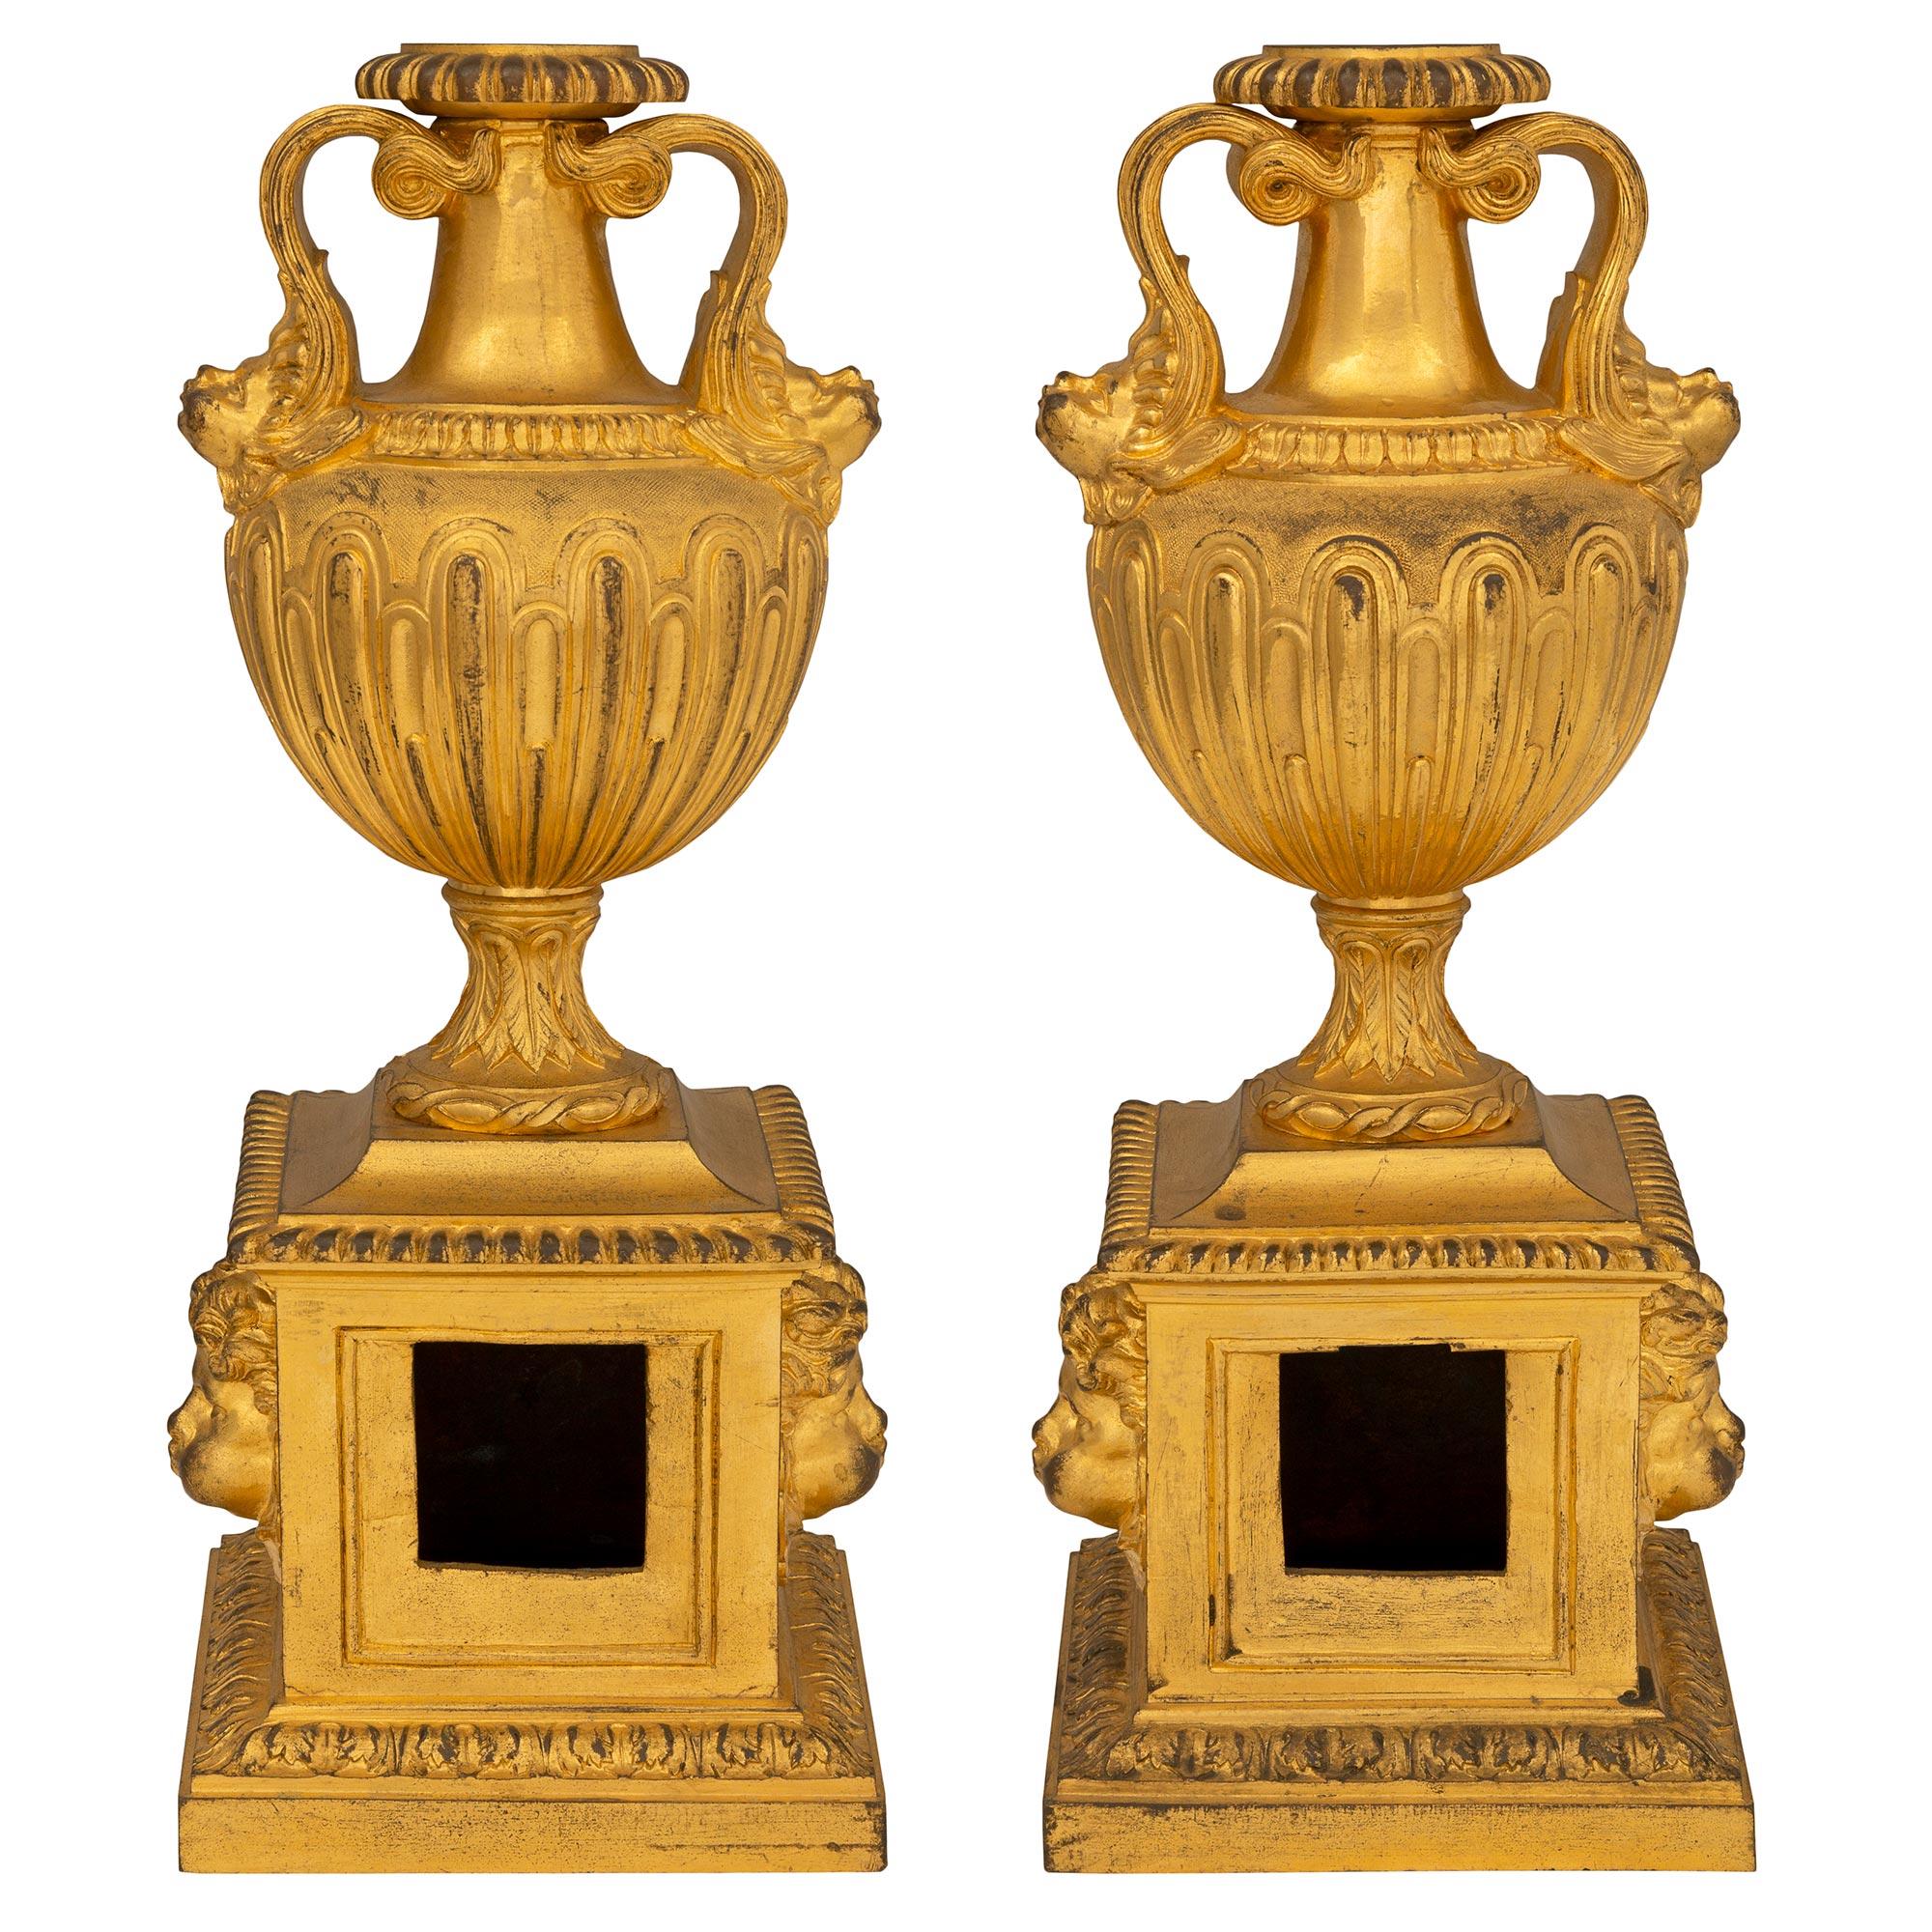 Ein sehr elegantes Paar französischer Chenets/Andirons aus dem 18. Jahrhundert aus der Louis-XVI-Periode mit Ormolu. Jedes Chenet steht auf einem quadratischen Sockel mit einem umlaufenden Akanthusblattrand. In der Mitte befinden sich drei